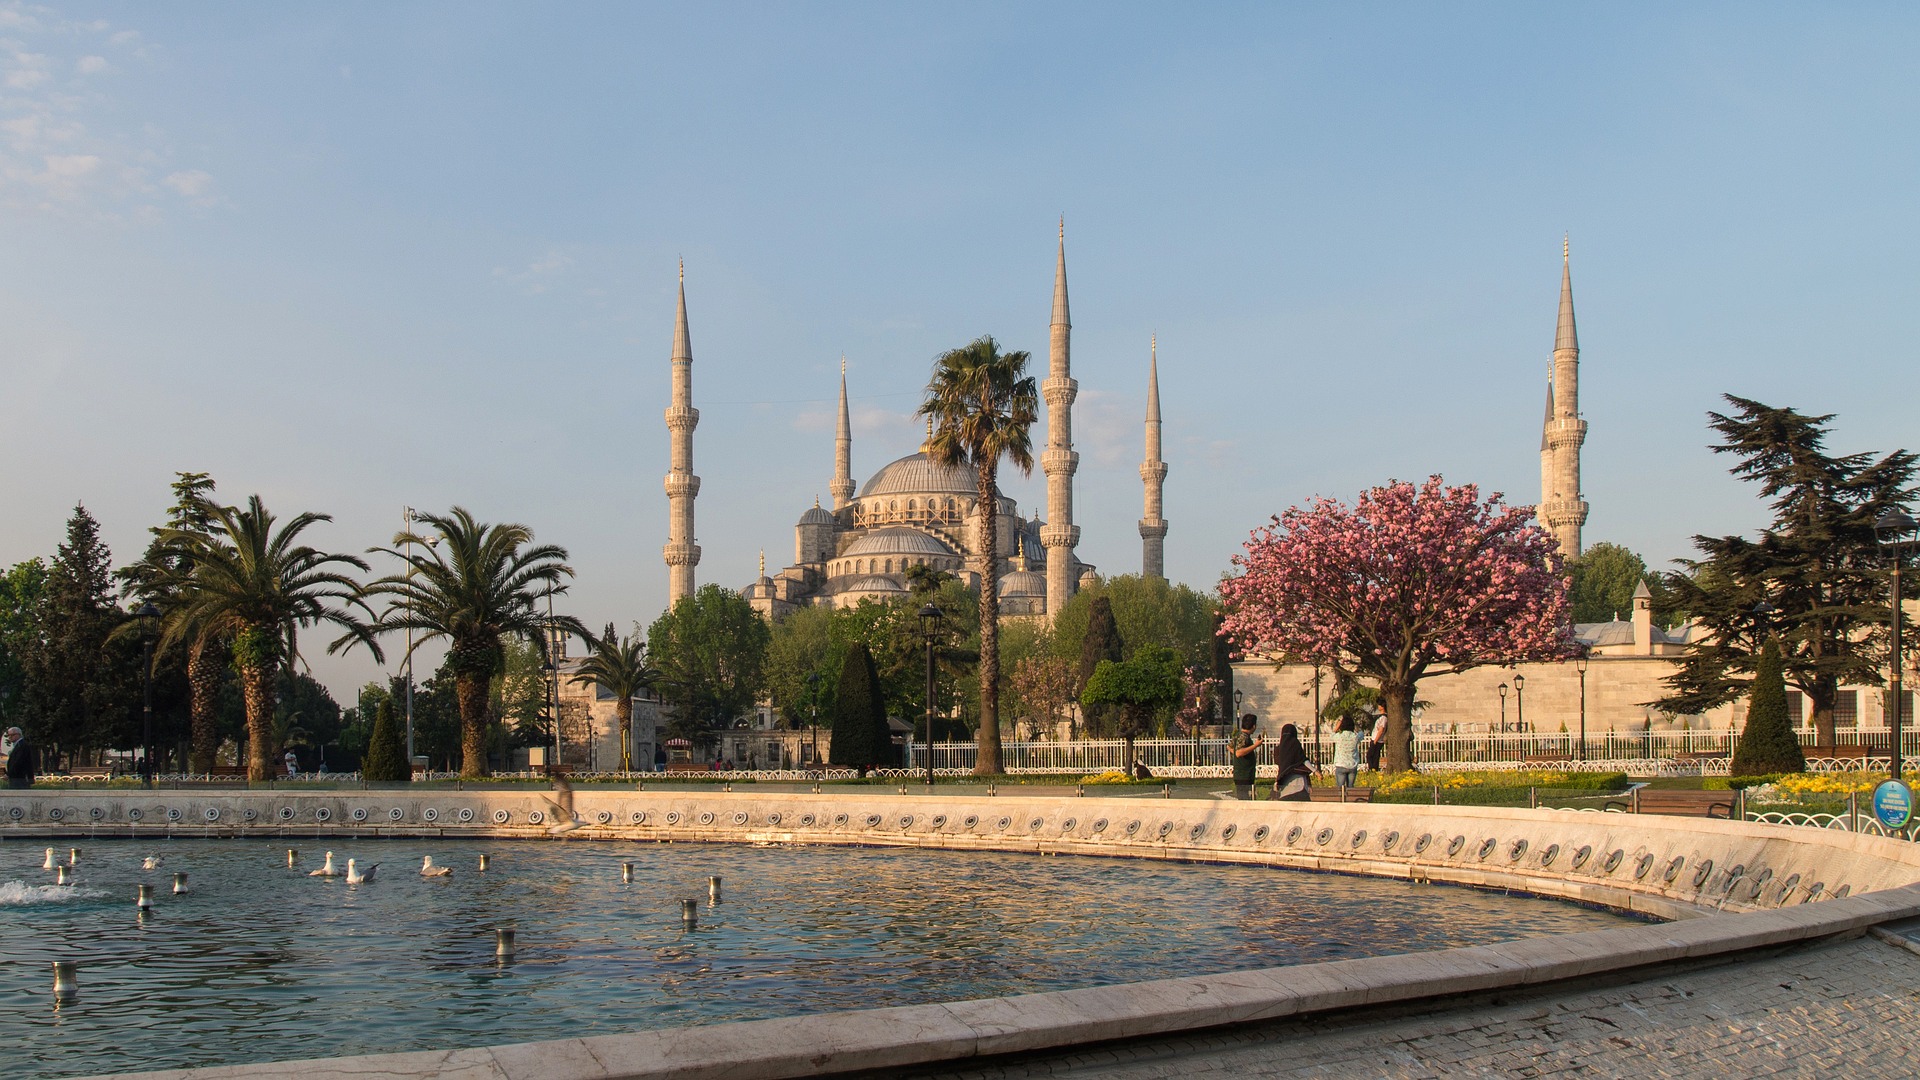 den blå moske i istanbul, blue mosque in istanbul, sultan ahmet camii i istanbul, sultan ahmet moske i istanbul, moskeer i tyrkiet, moskeer i istanbul, regler for at besøge moske, gratis oplevelser i istanbul, gratis seværdigheder i istanbul,